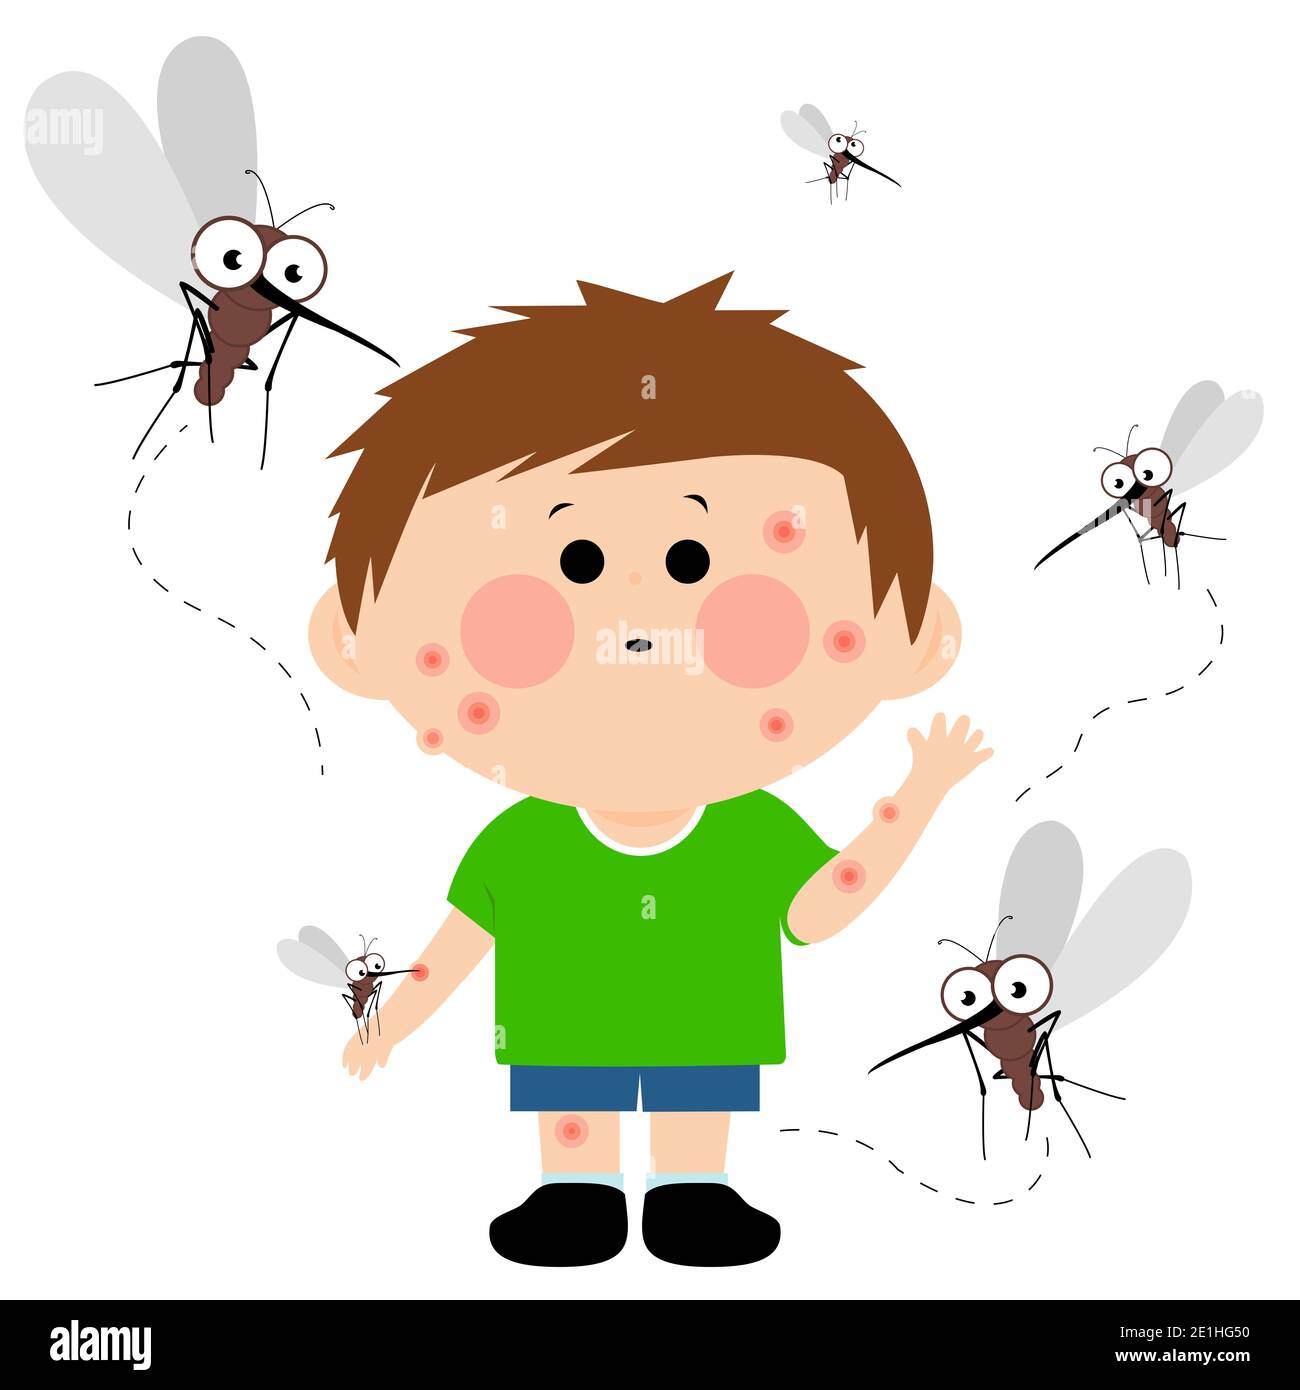 Illustrazione di zanzare cartoni animati che volano intorno a un ragazzo e lo mordono. La sua pelle è piena di morsi di zanzara. Foto Stock